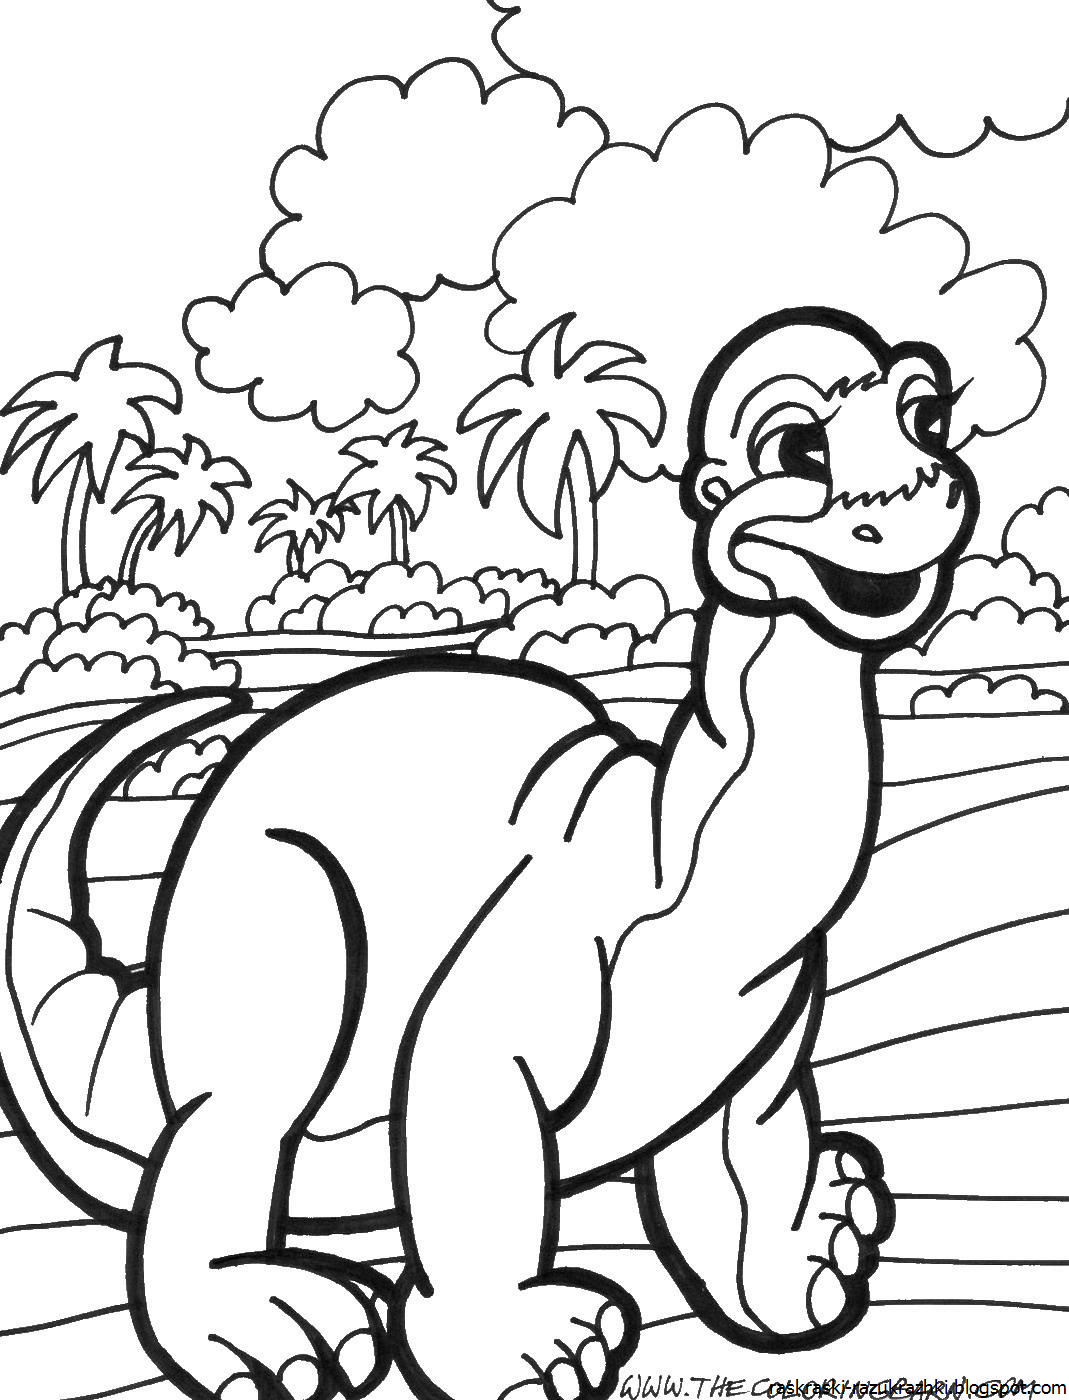 Раскраски динозавры а4. Динозавры / раскраска. Динозавры для раскрашивания детям. Динозавр раскраска для детей. Раскраска "Динозаврики".